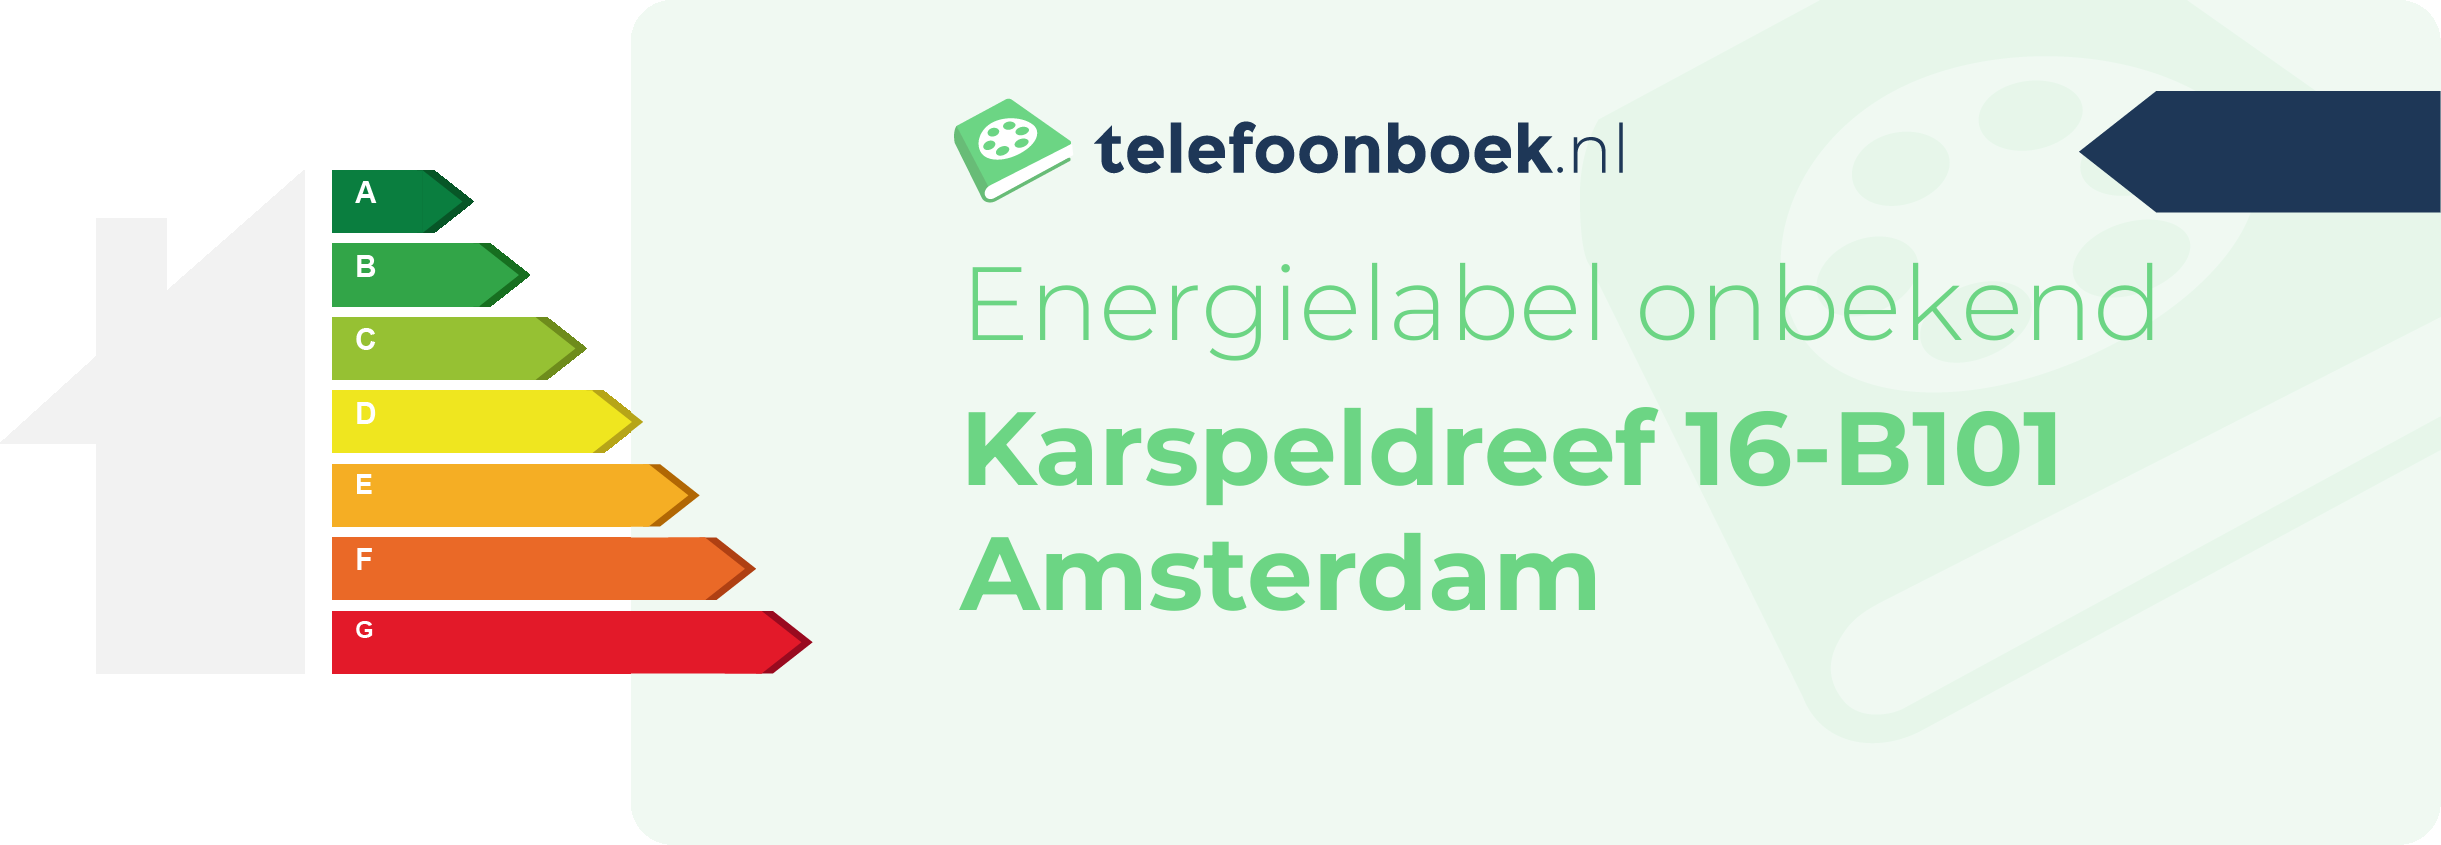 Energielabel Karspeldreef 16-B101 Amsterdam